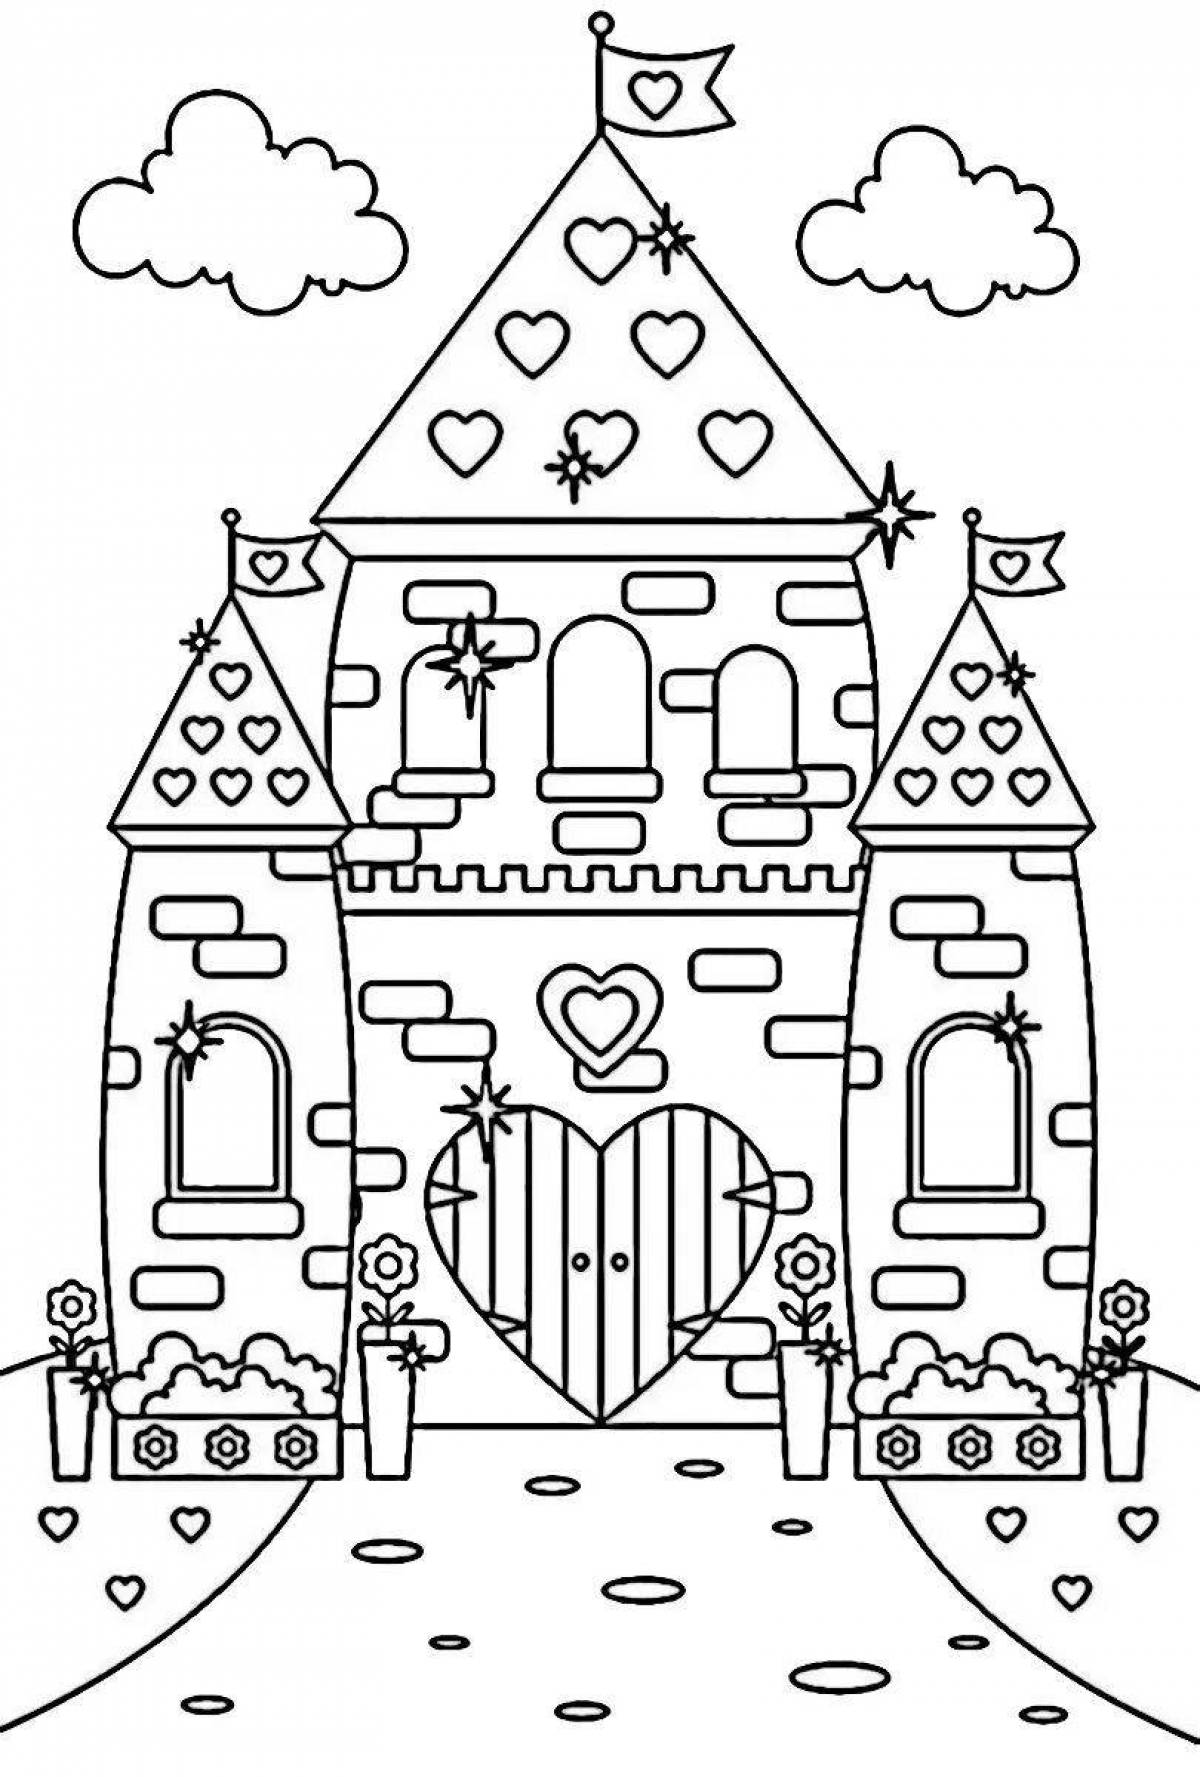 Coloring book joyful fairy tale castle